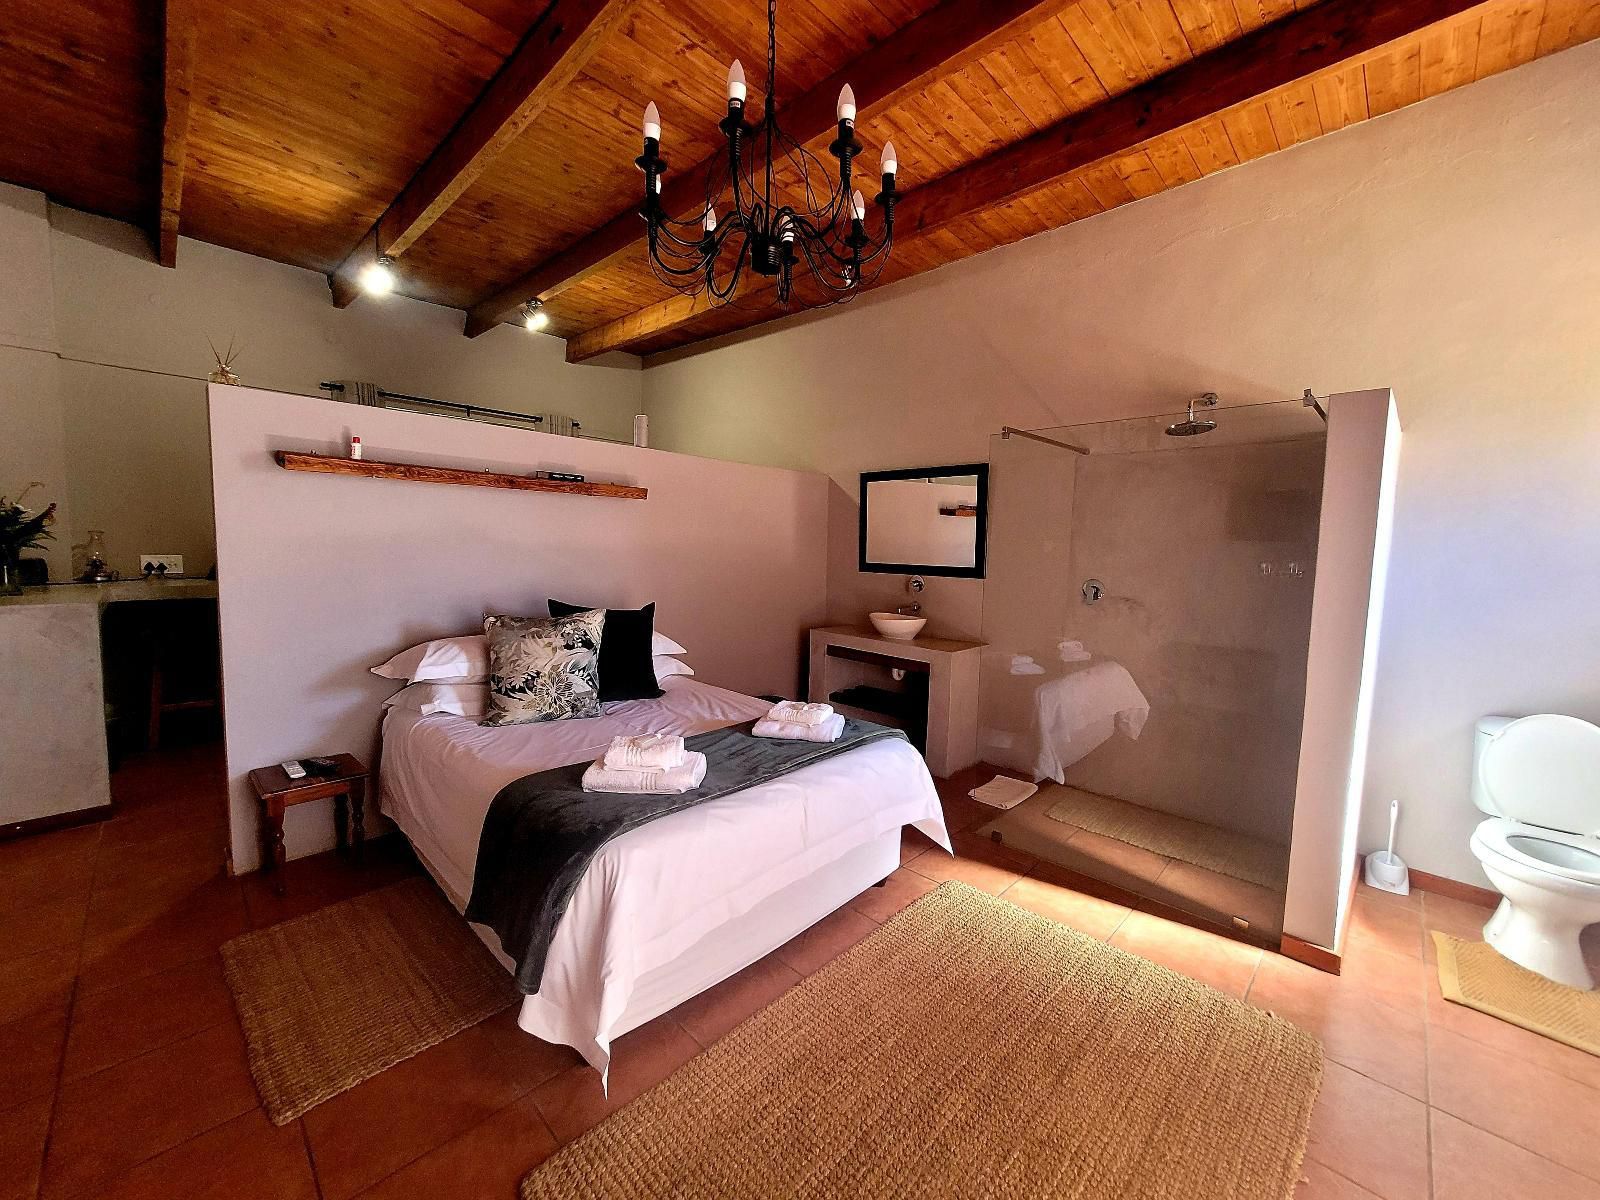 Farm Cottages At Au D Brandy Route De Doorns Western Cape South Africa Bedroom